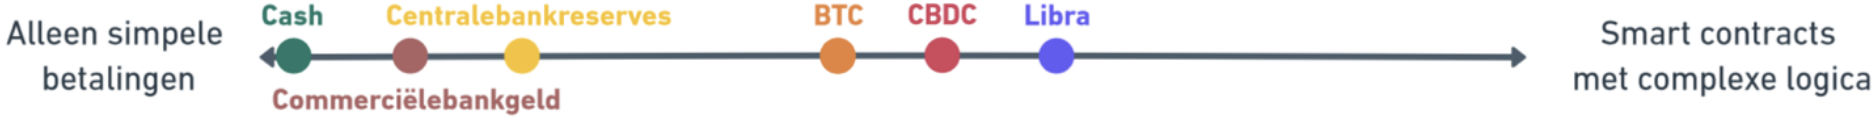 DNB CBDC vs Bitcoin vs Libra 1.jpg